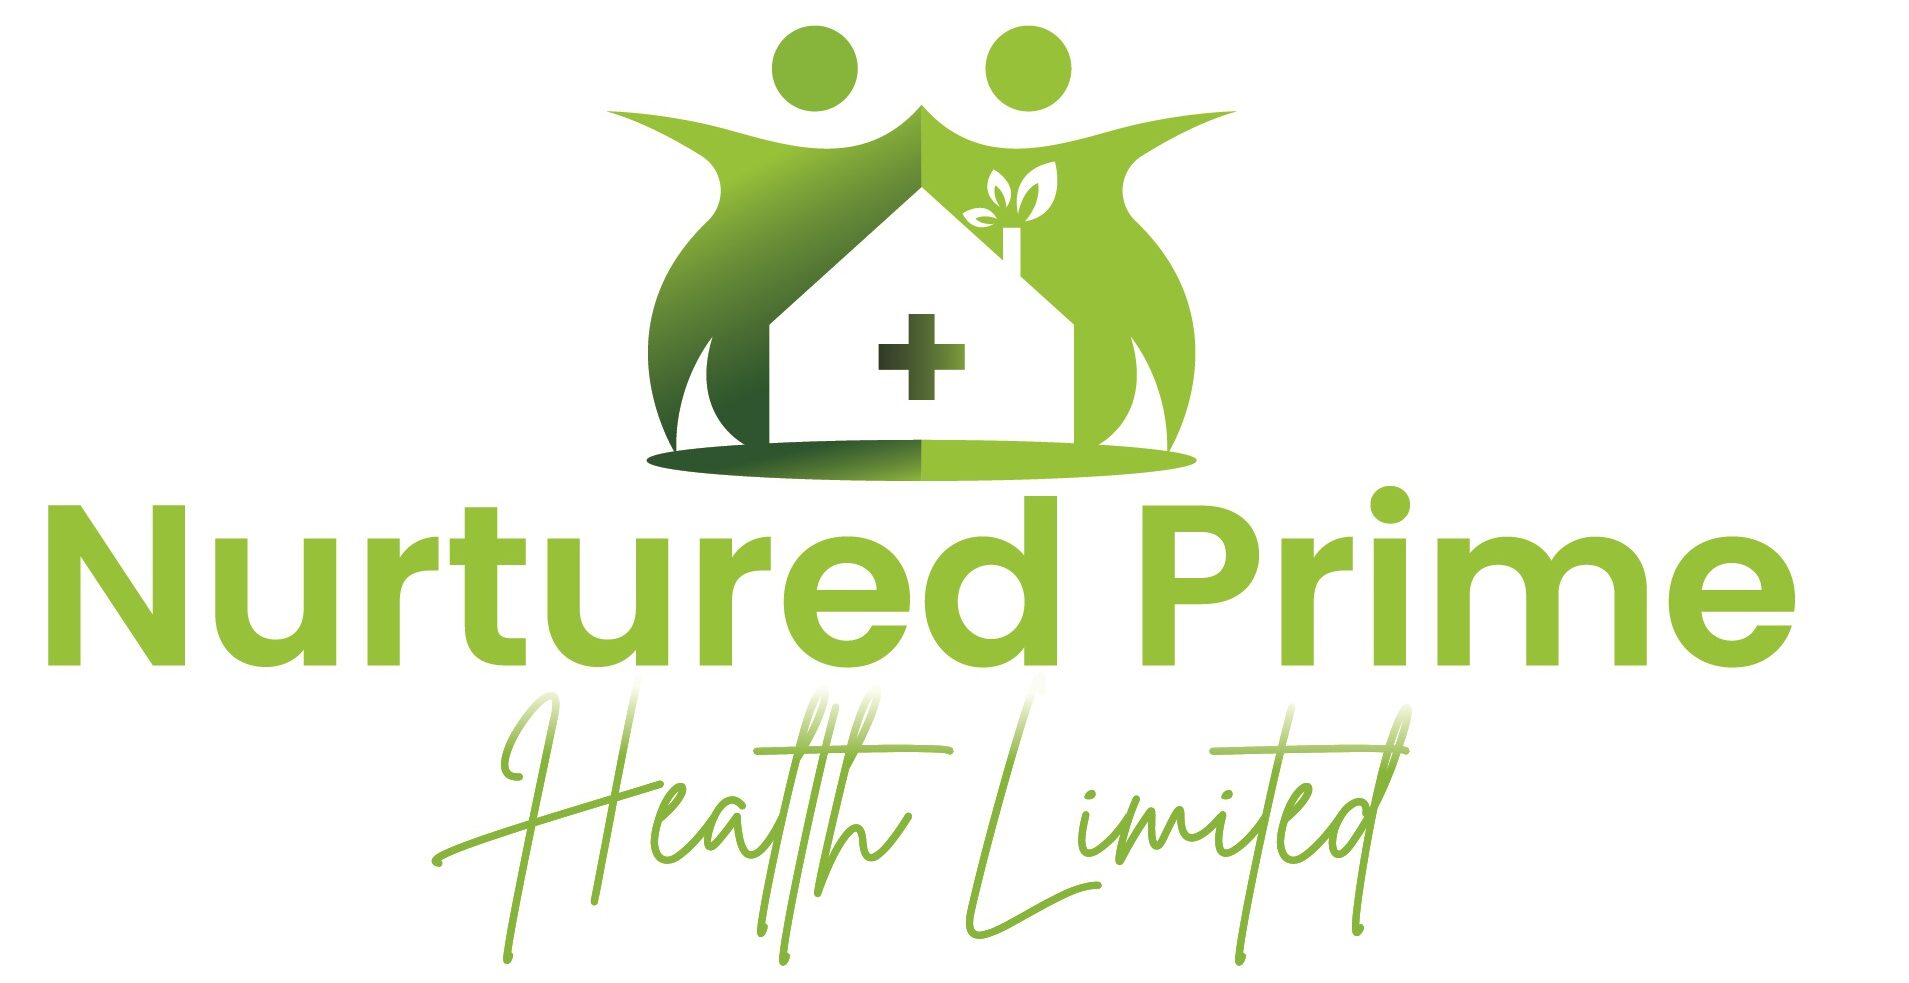 Nurtured Prime Health Limited